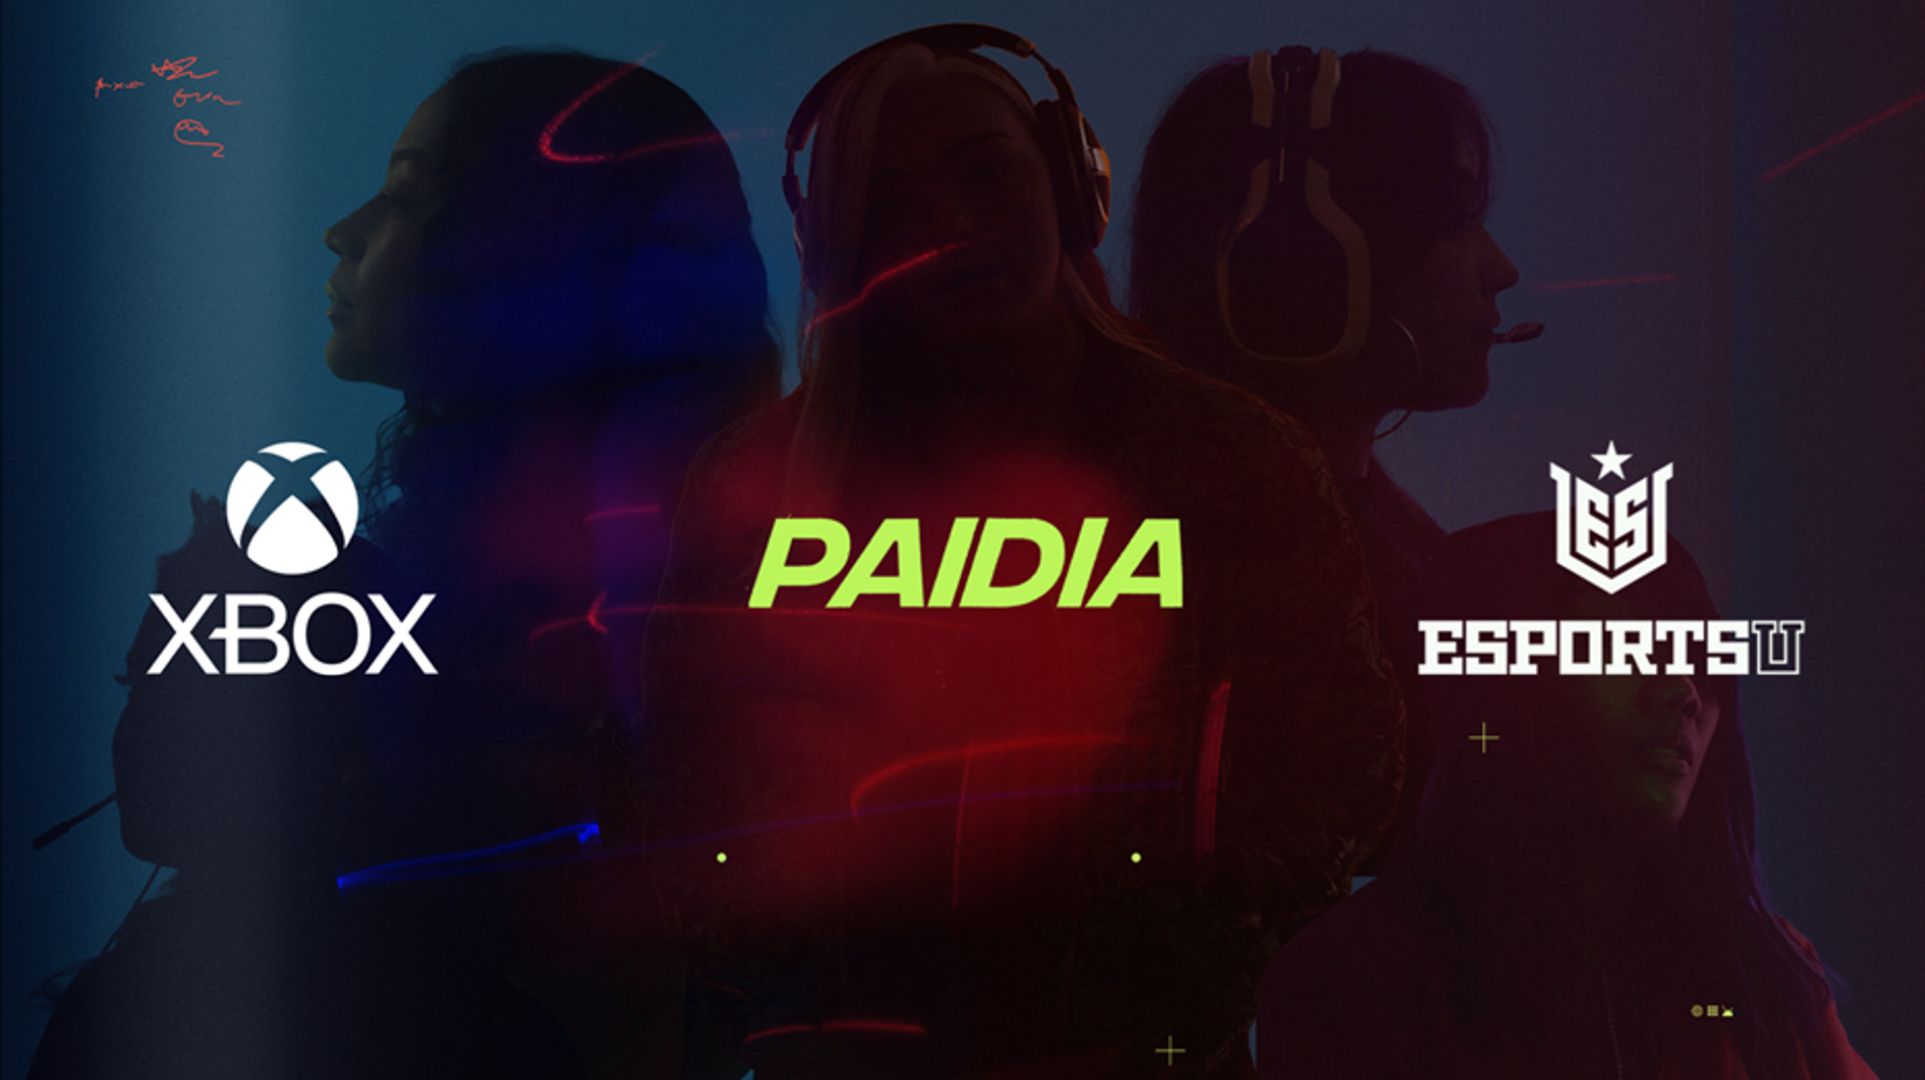 Logotipos de Xbox, Paidia y EsportsU sobre la imagen de cinco jugadoras que representan una asociación para empoderar y ampliar las oportunidades de las mujeres en los videojuegos.